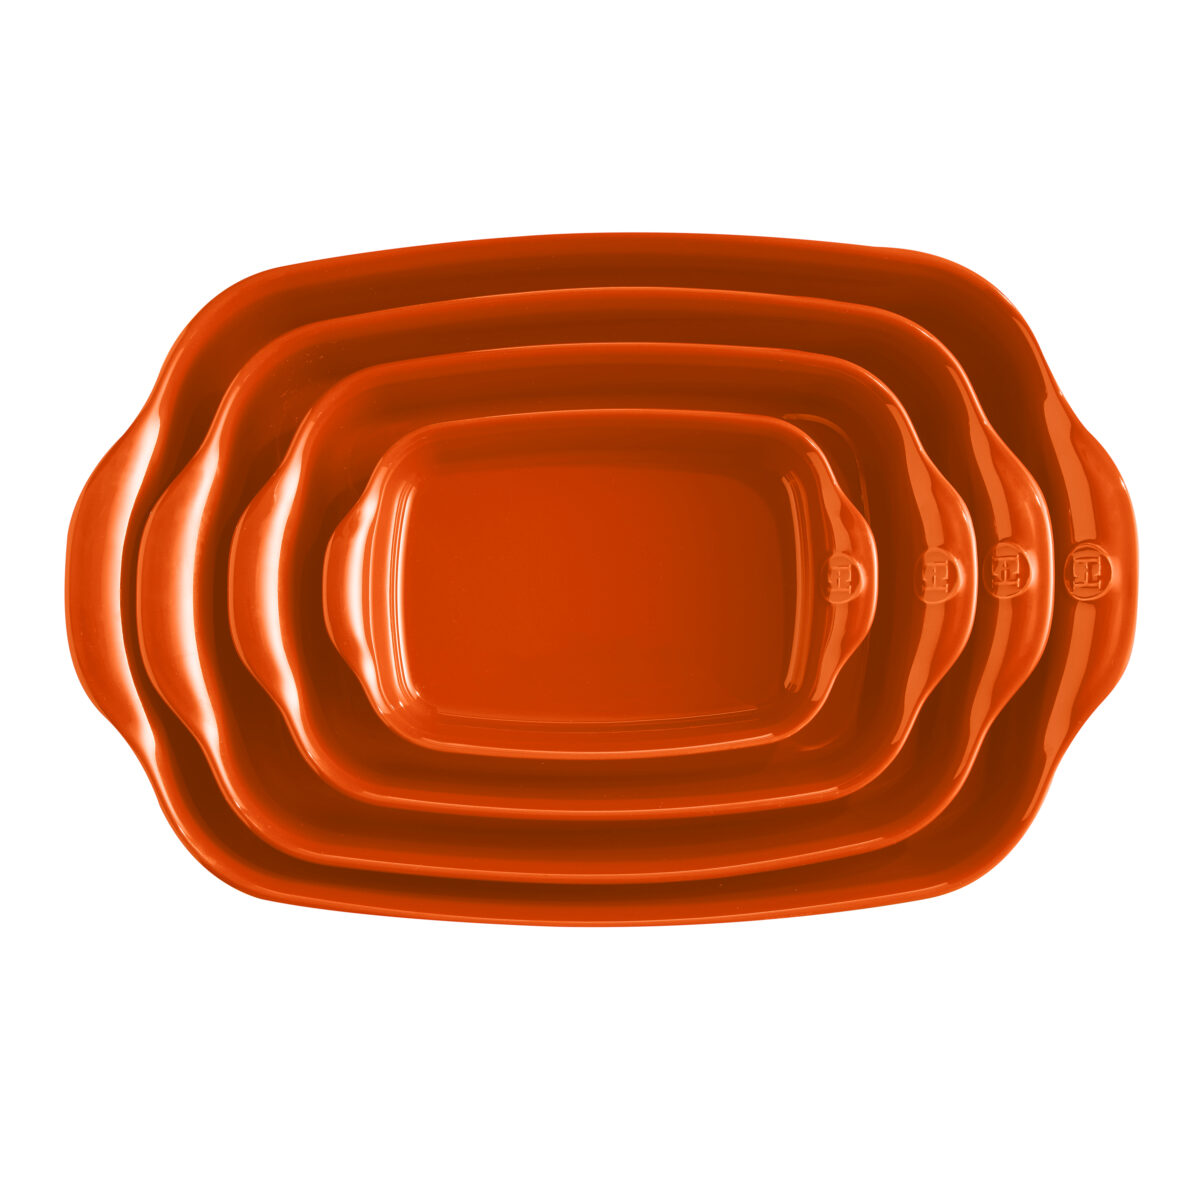 Керамична тава EMILE HENRY RECTANGULAR OVEN DISH - 36,5 х 23,5 см, цвят оранжев